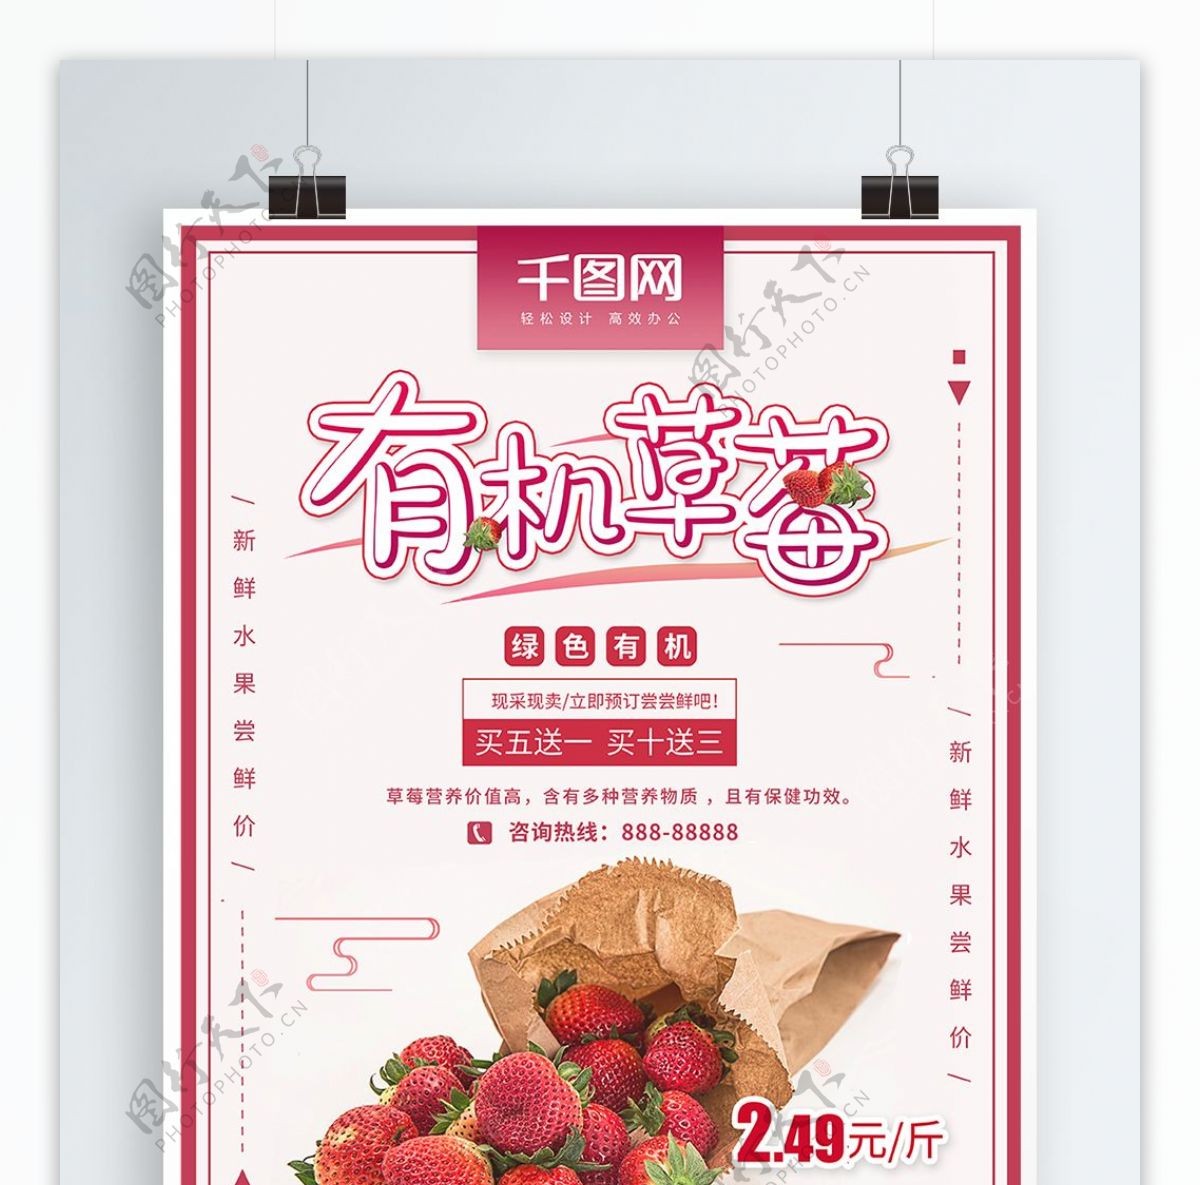 有机草莓水果促销海报